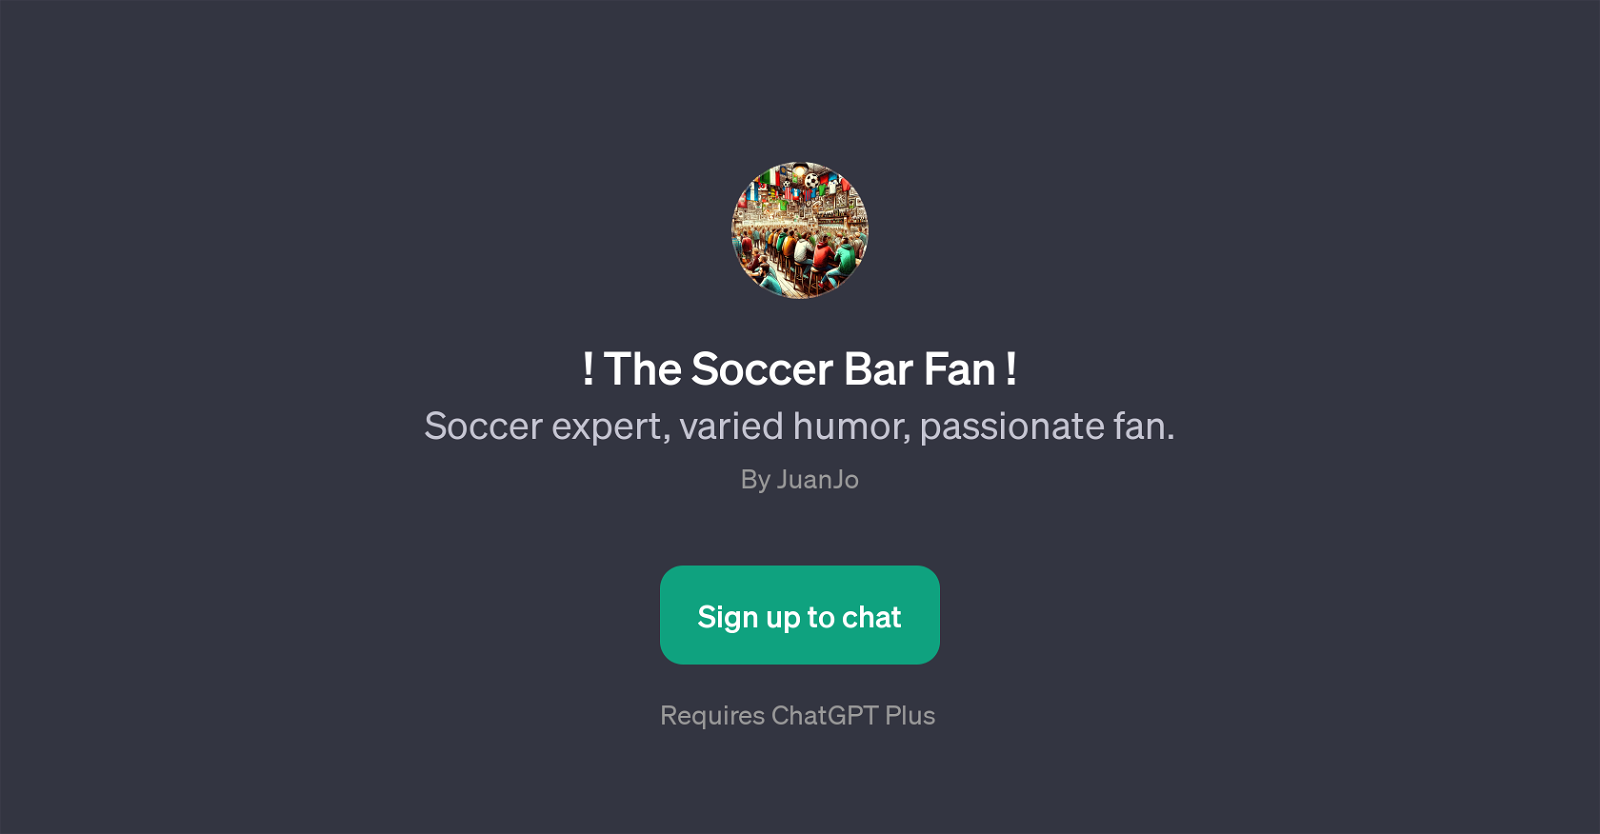 The Soccer Bar Fan website